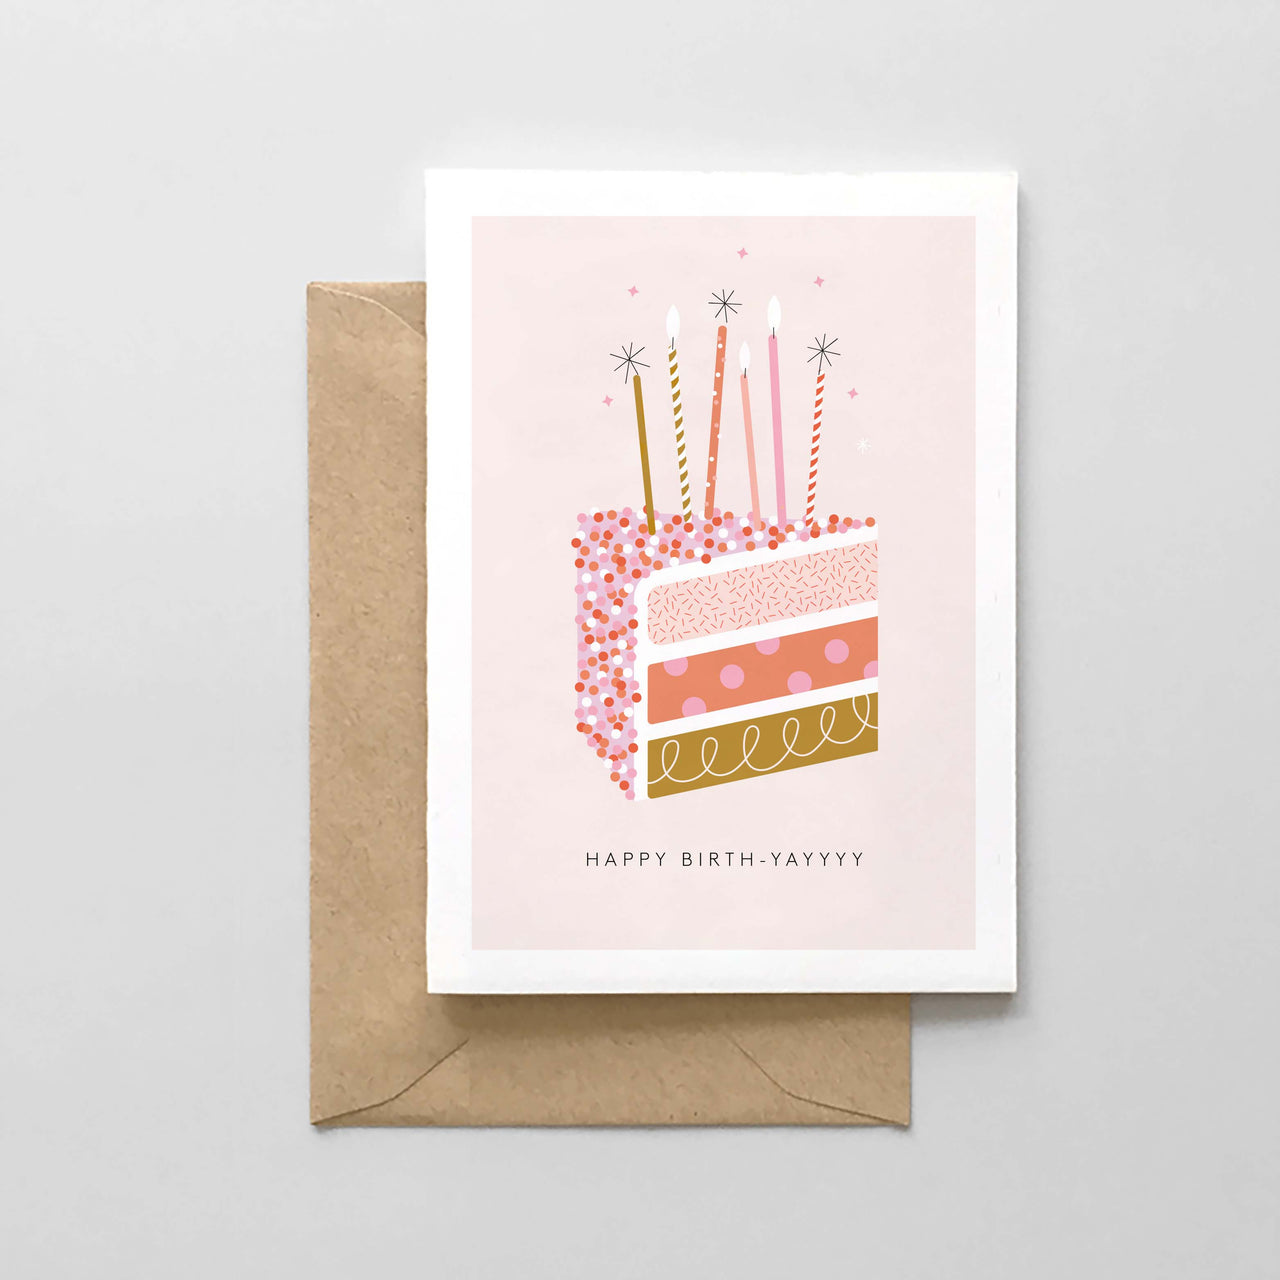 Happy Birth-Yayyyyy - Funfetti Card